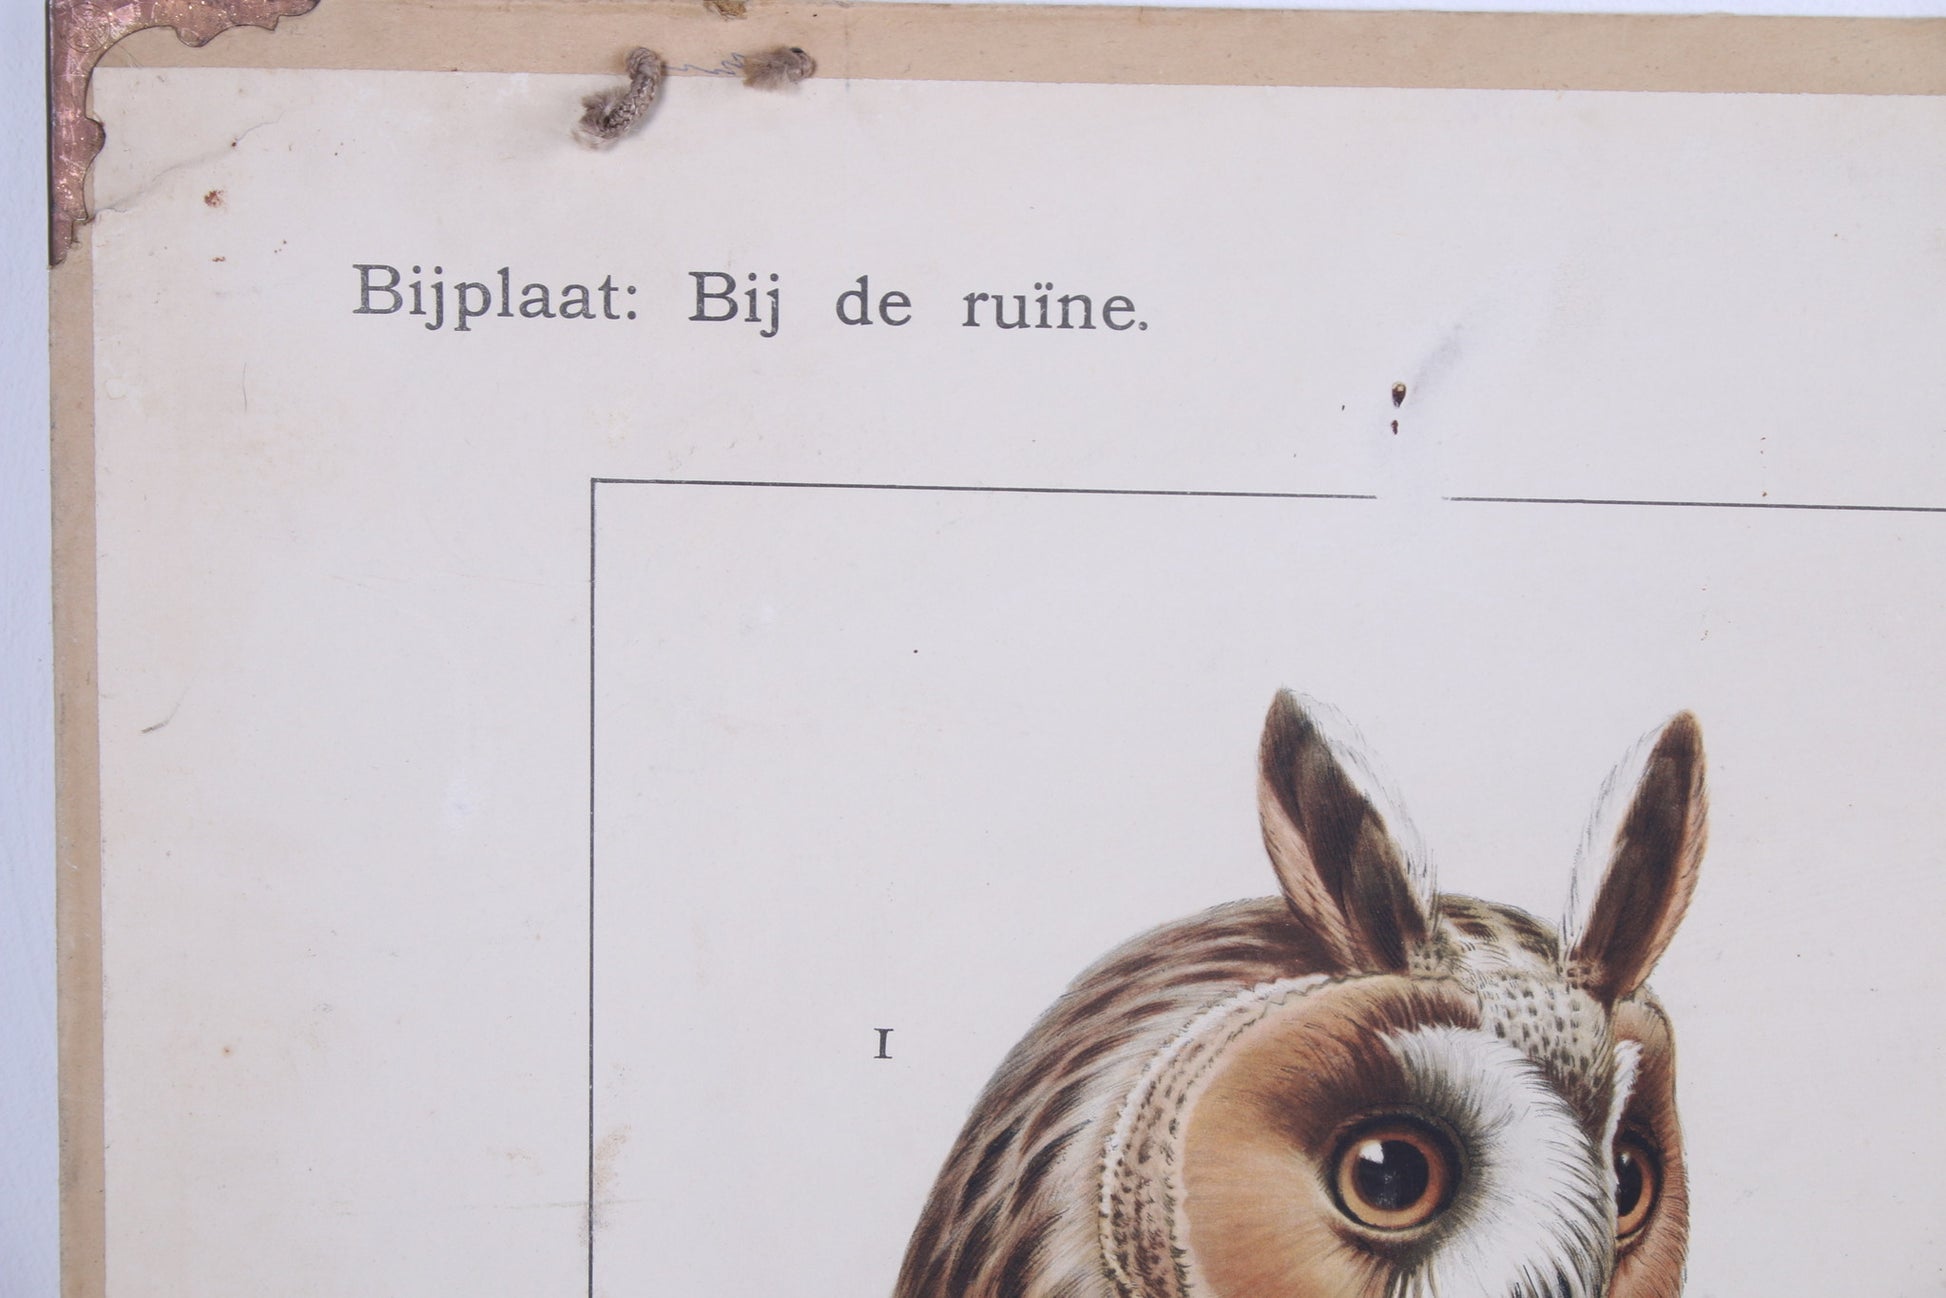 Vintage Schoolkaart Vissen en Groei van een vleermuis jaren60s detail tekst hoek vleermuiskaart